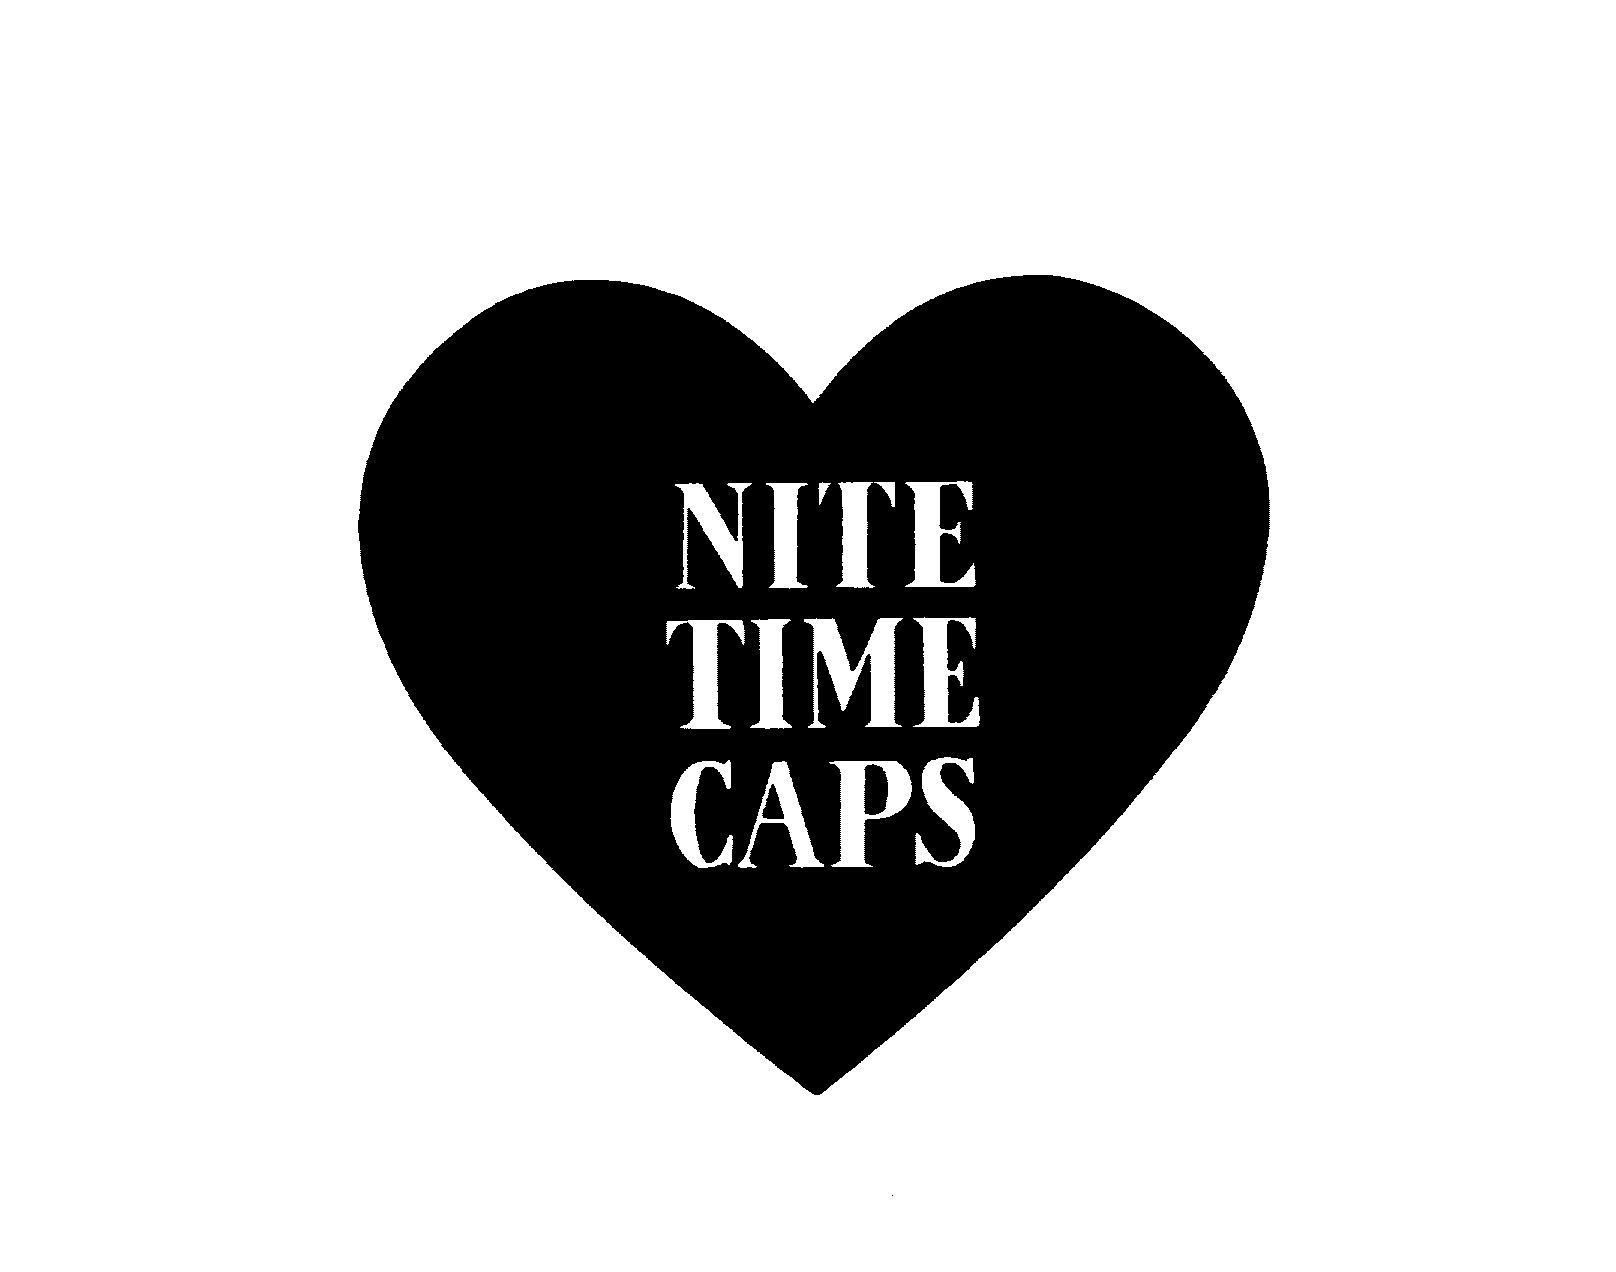  NITE TIME CAPS